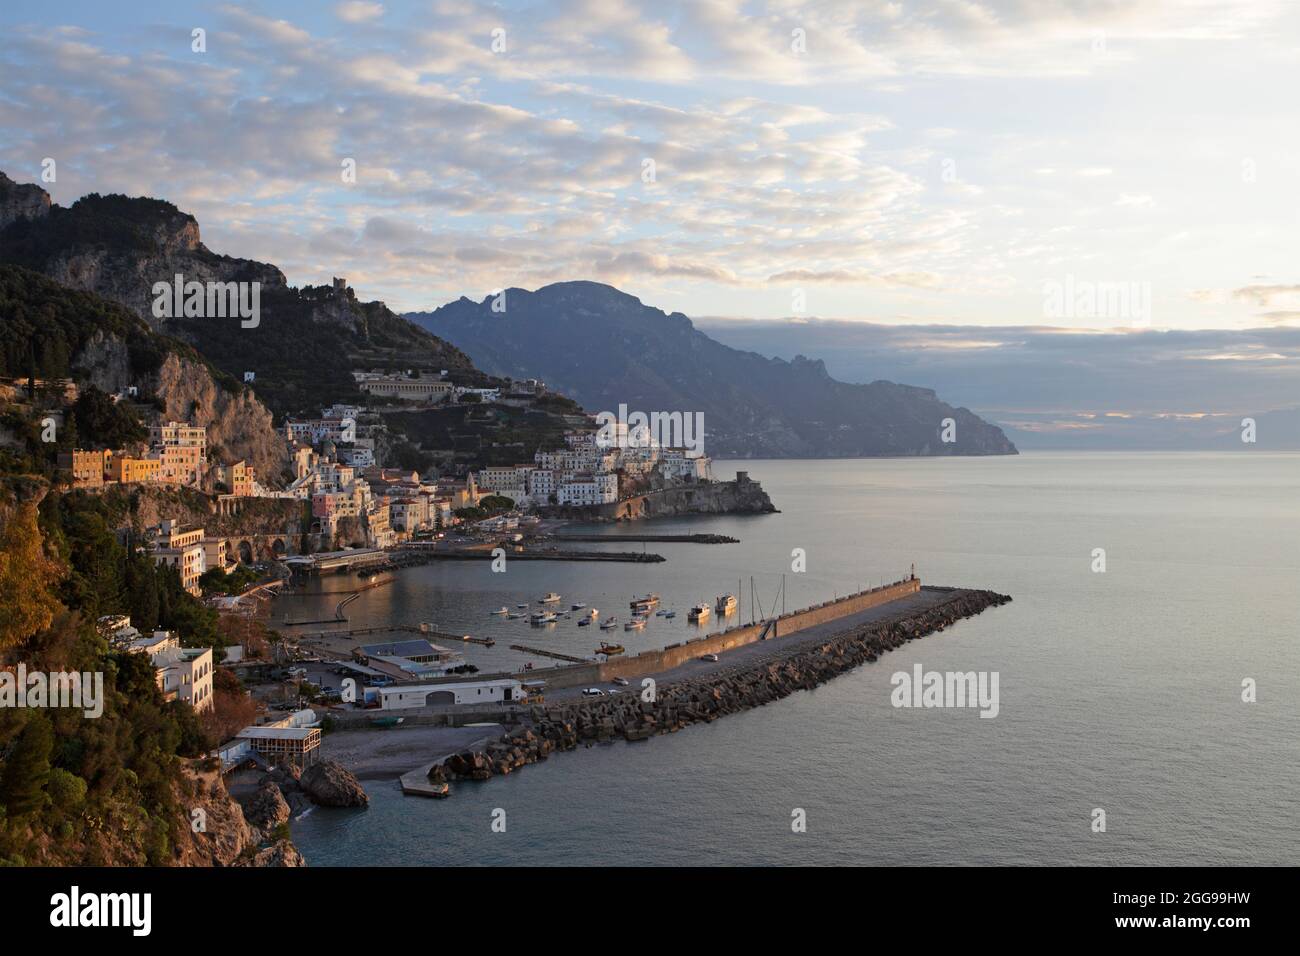 Amanecer en Amalfi, provincia de Salerno, Italia Foto de stock